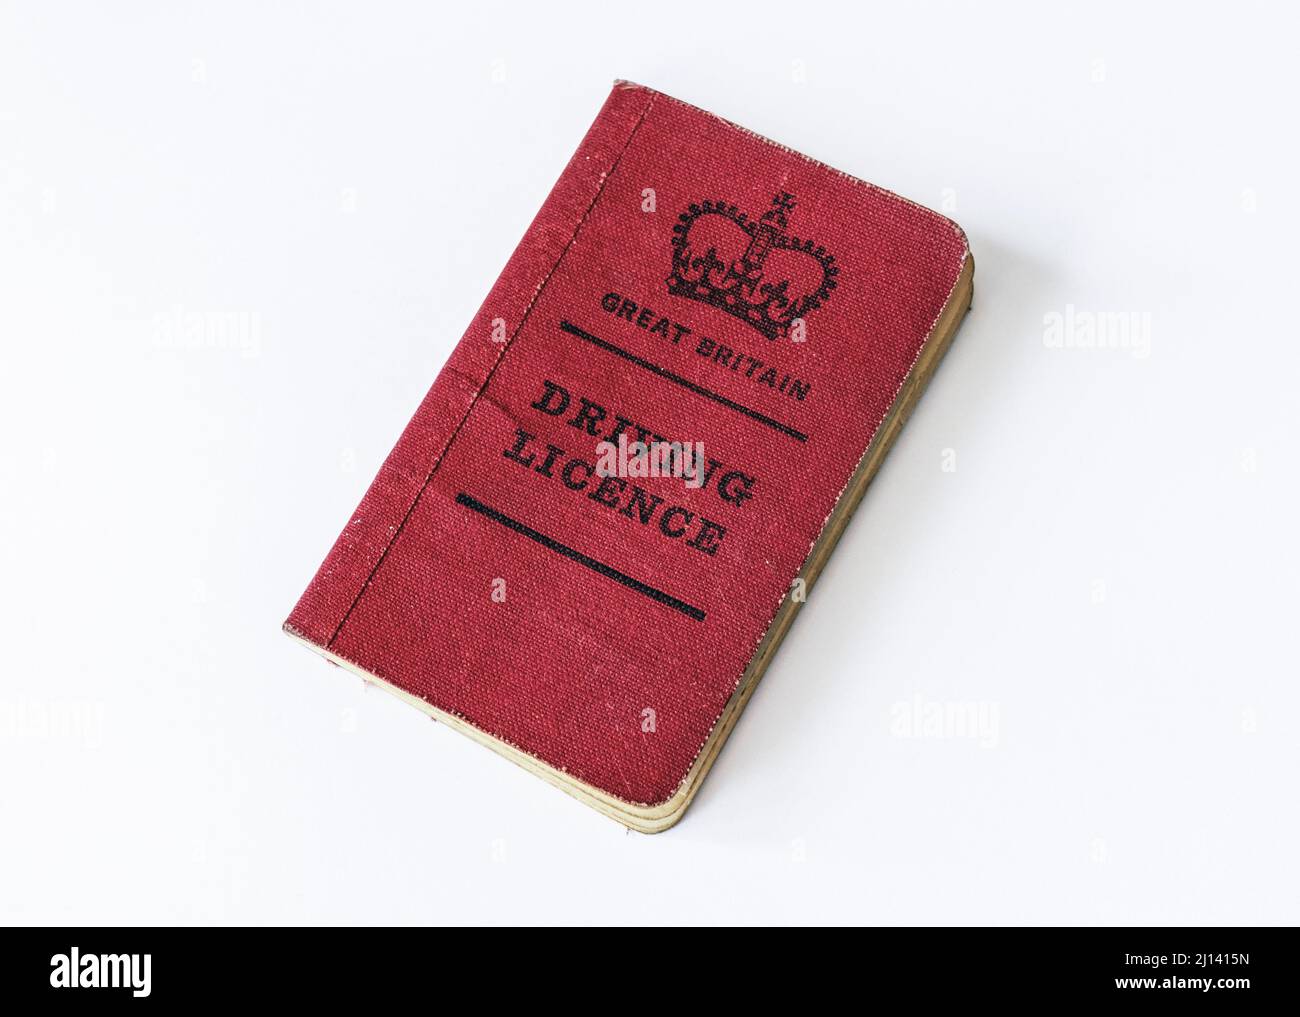 Un livret de permis de conduire britannique recouvert de lin rouge de la v.1970 Banque D'Images